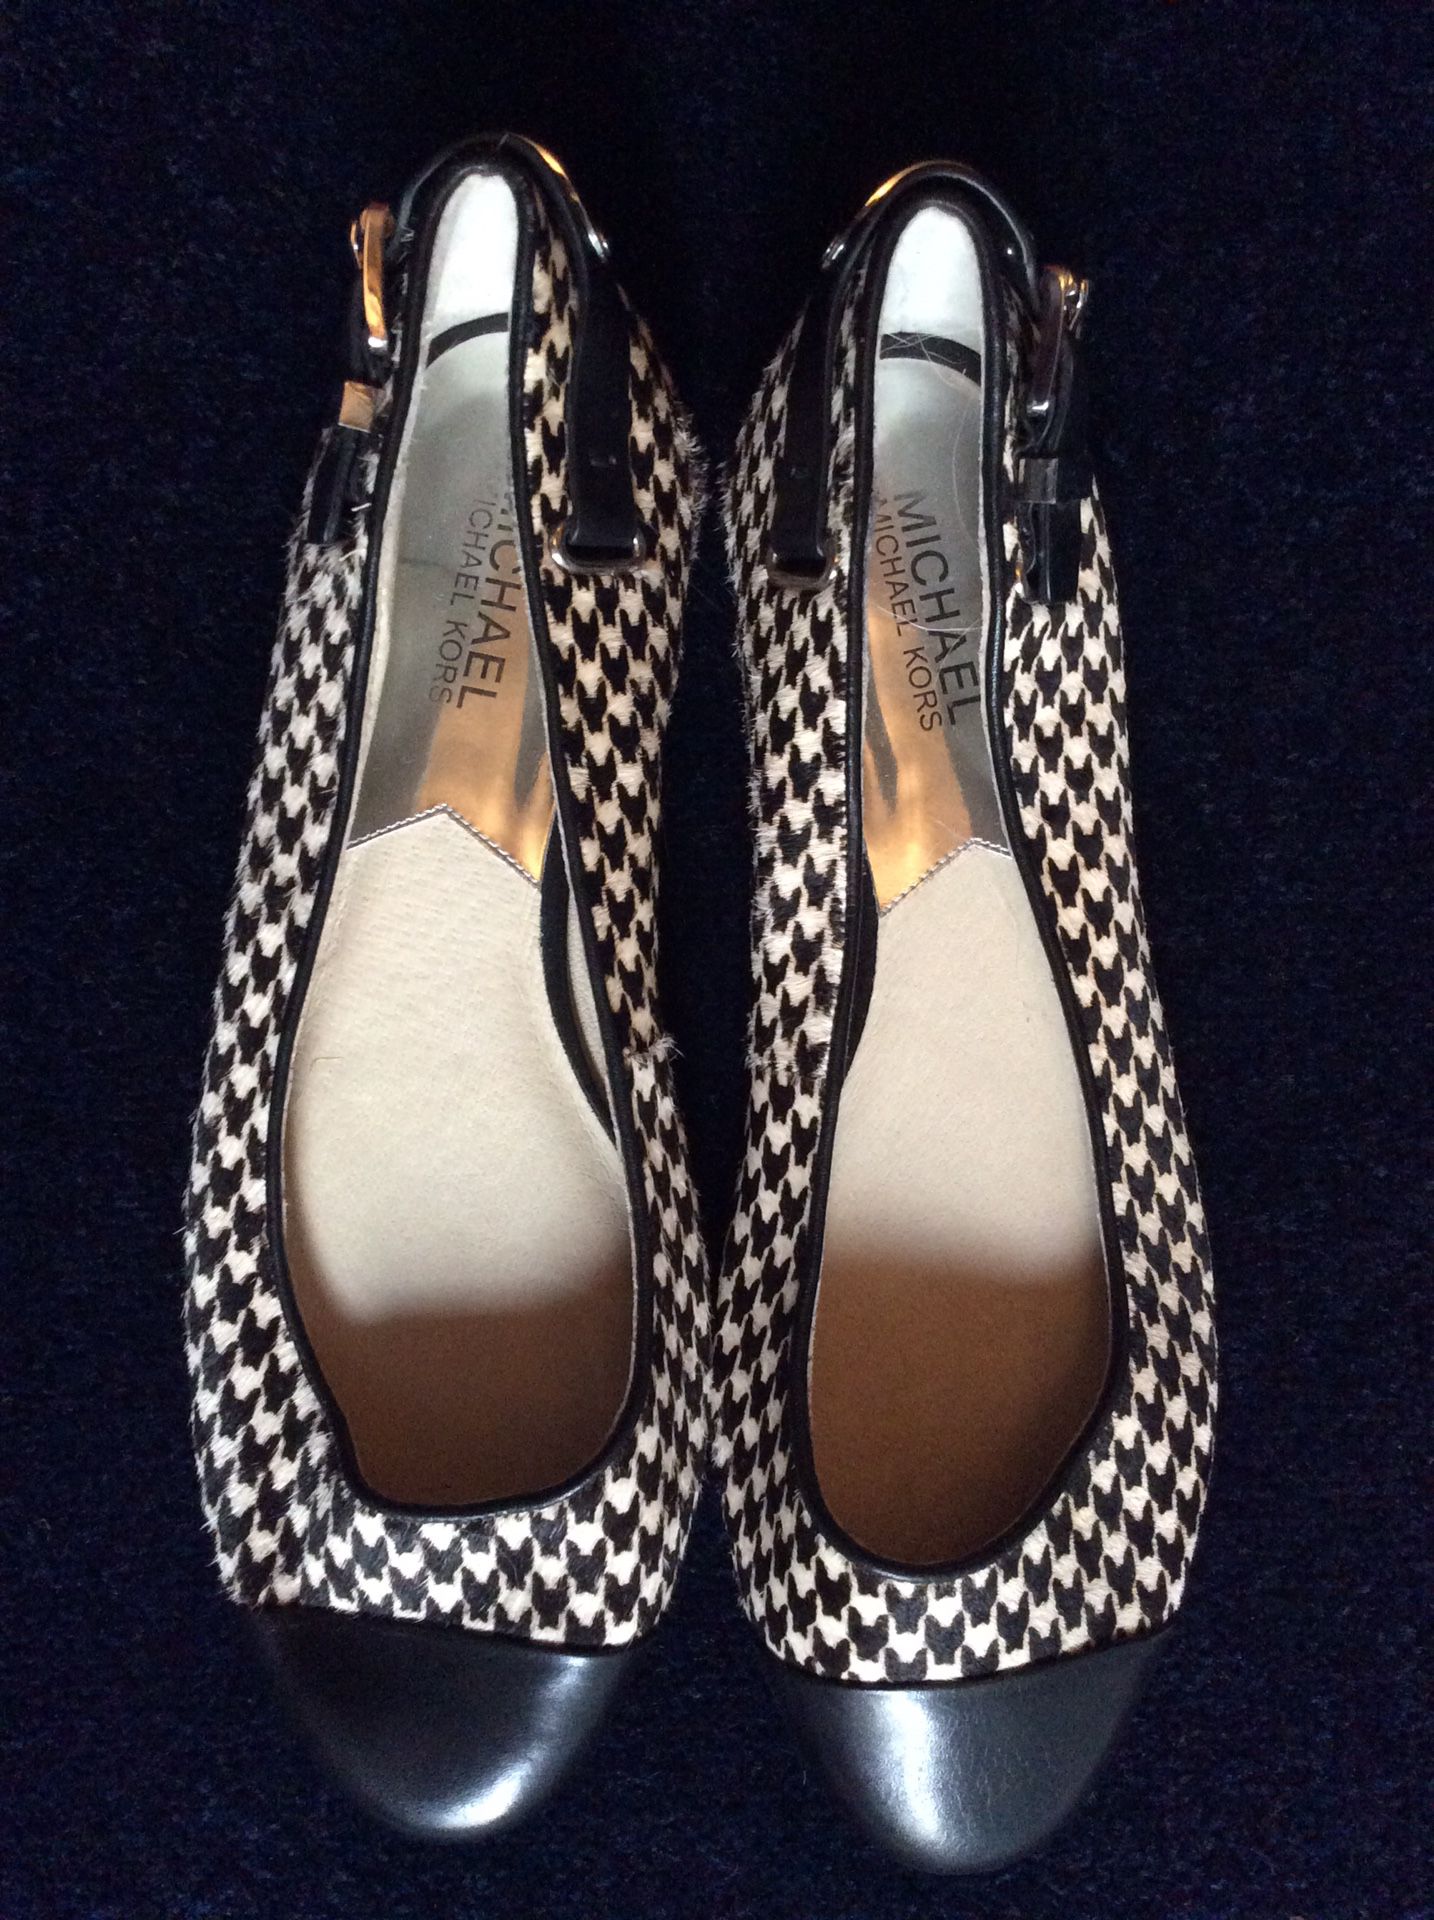 Michael Kors shoes-size 9 ladies